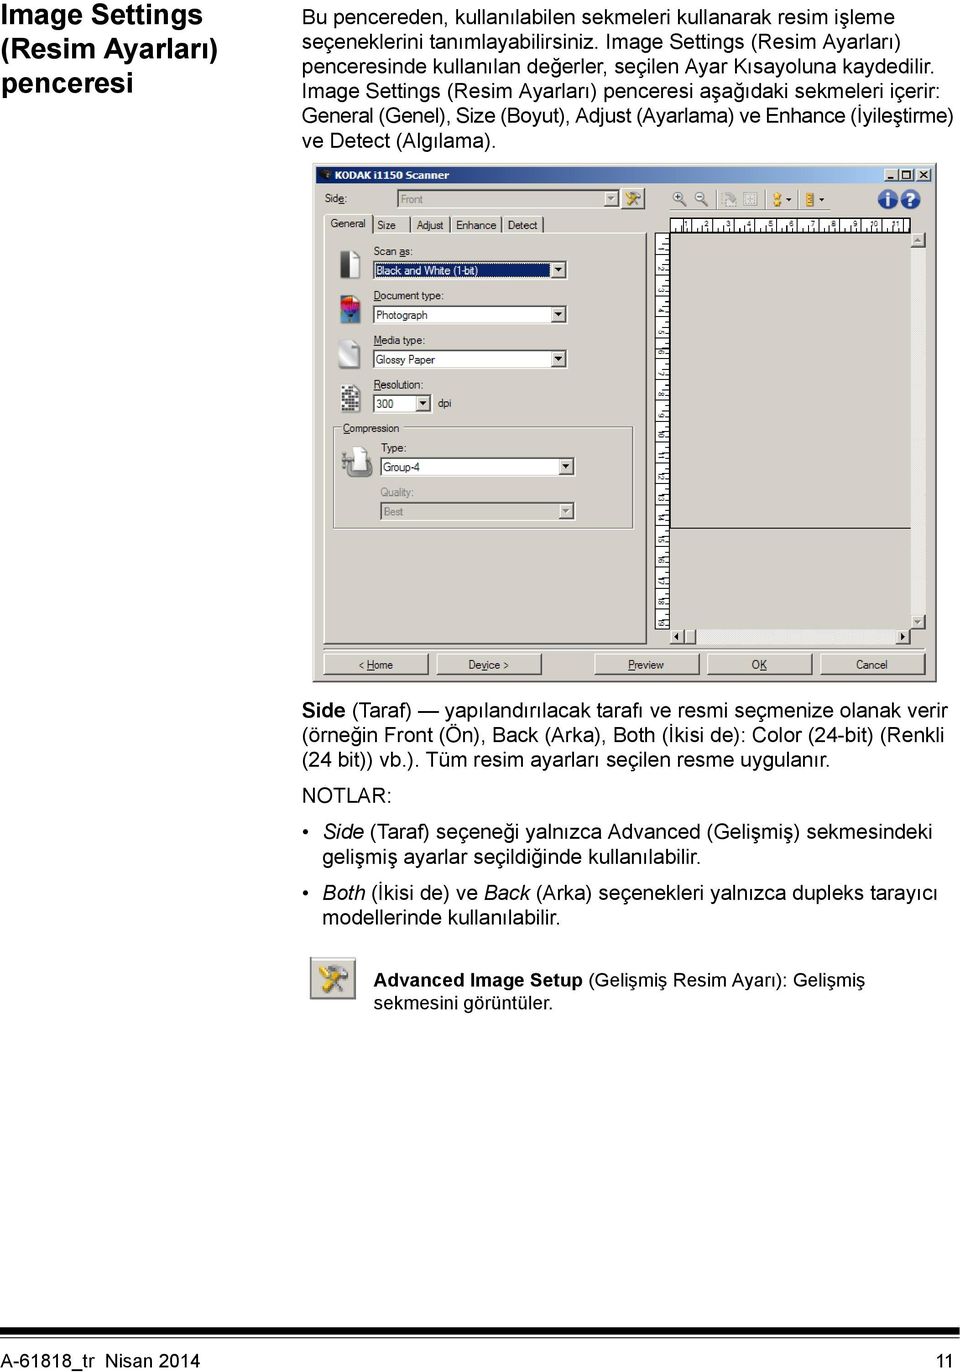 Image Settings (Resim Ayarları) penceresi aşağıdaki sekmeleri içerir: General (Genel), Size (Boyut), Adjust (Ayarlama) ve Enhance (İyileştirme) ve Detect (Algılama).